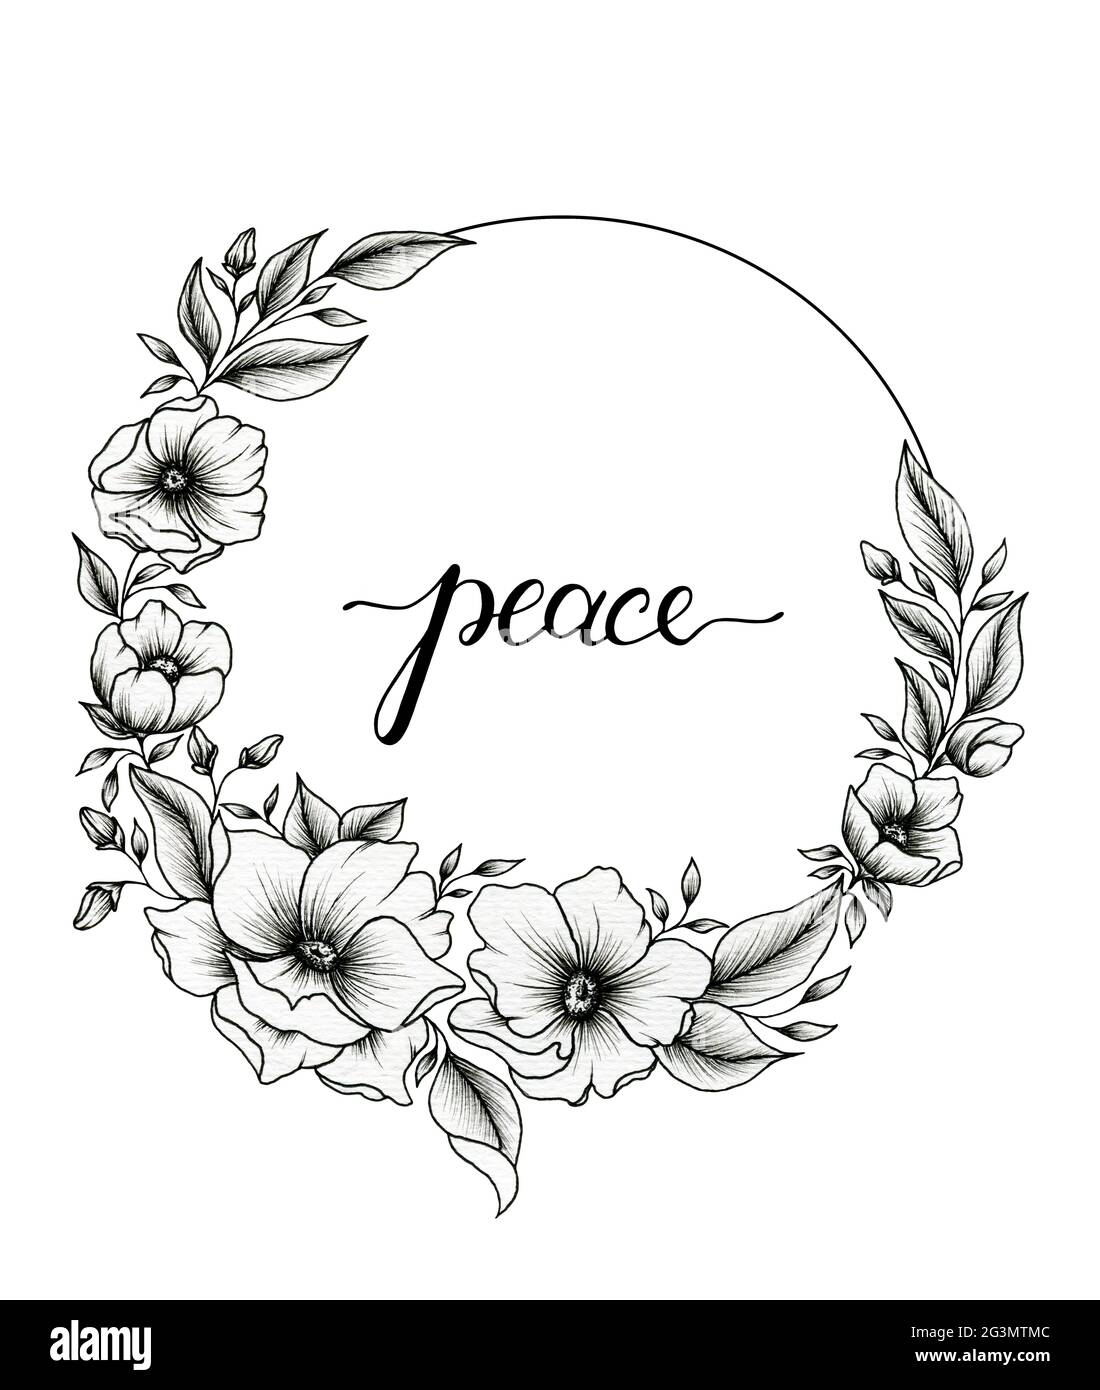 Hermosa corona de flores en blanco y negro y palabra de paz caligrafía  moderna manuscrita, dibujo a mano de flores negras para camiseta, tarjeta,  textiles Fotografía de stock - Alamy